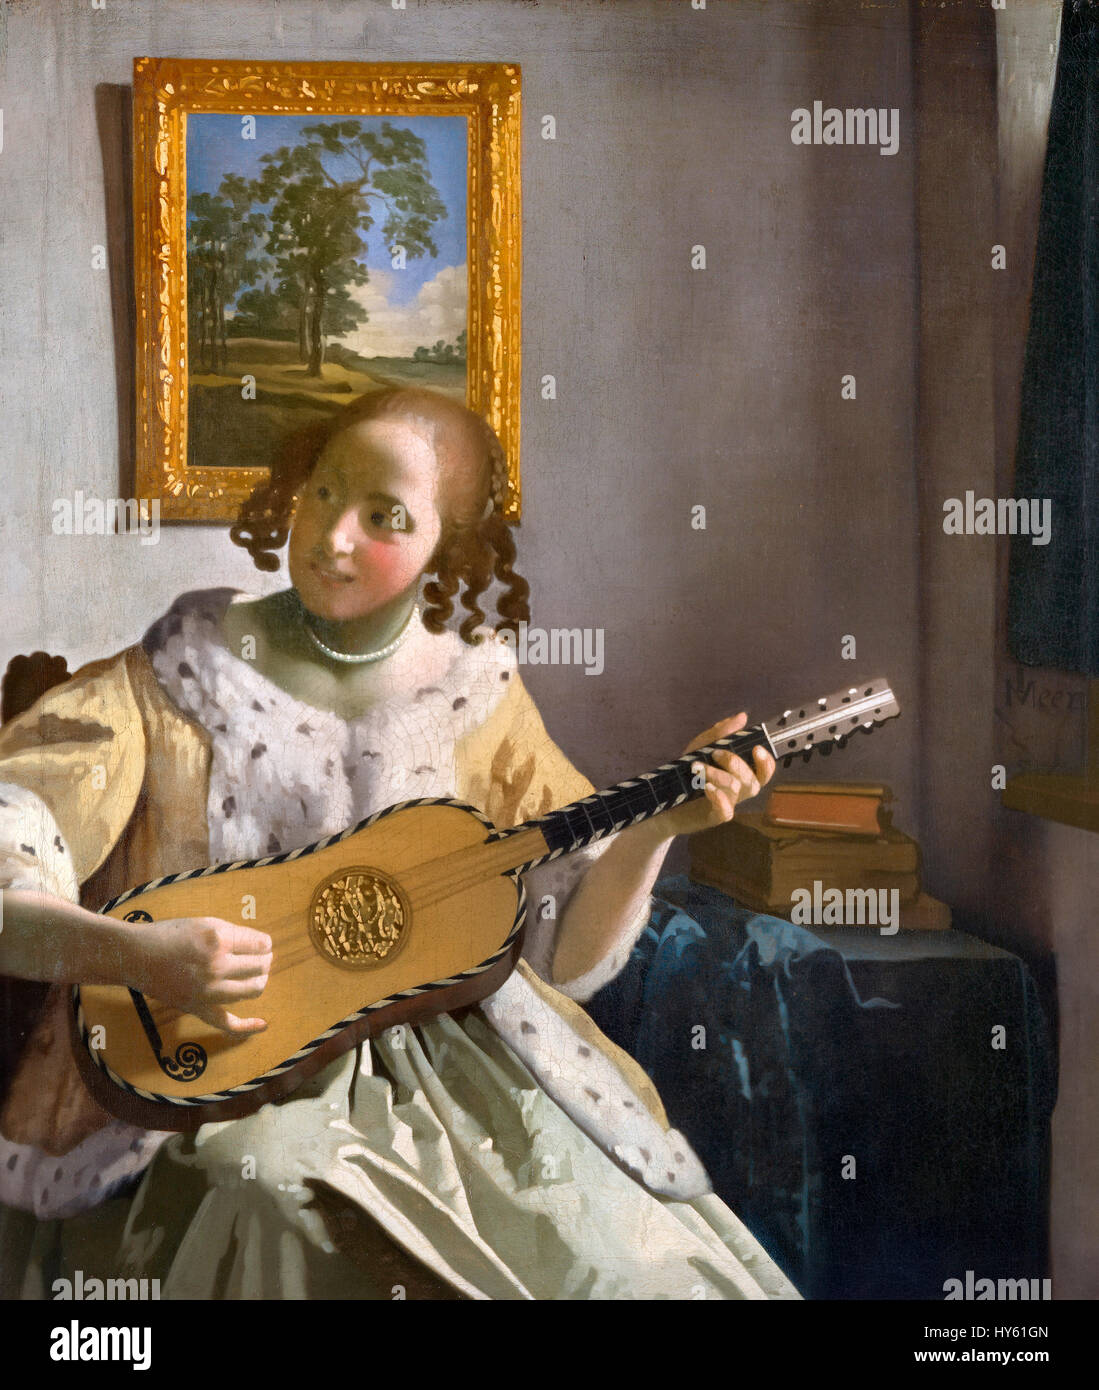 Mulher Vermeer Deitada Na Cama Antiga Da Copa Imagem de Stock - Imagem de  vestido, roupa: 164335627